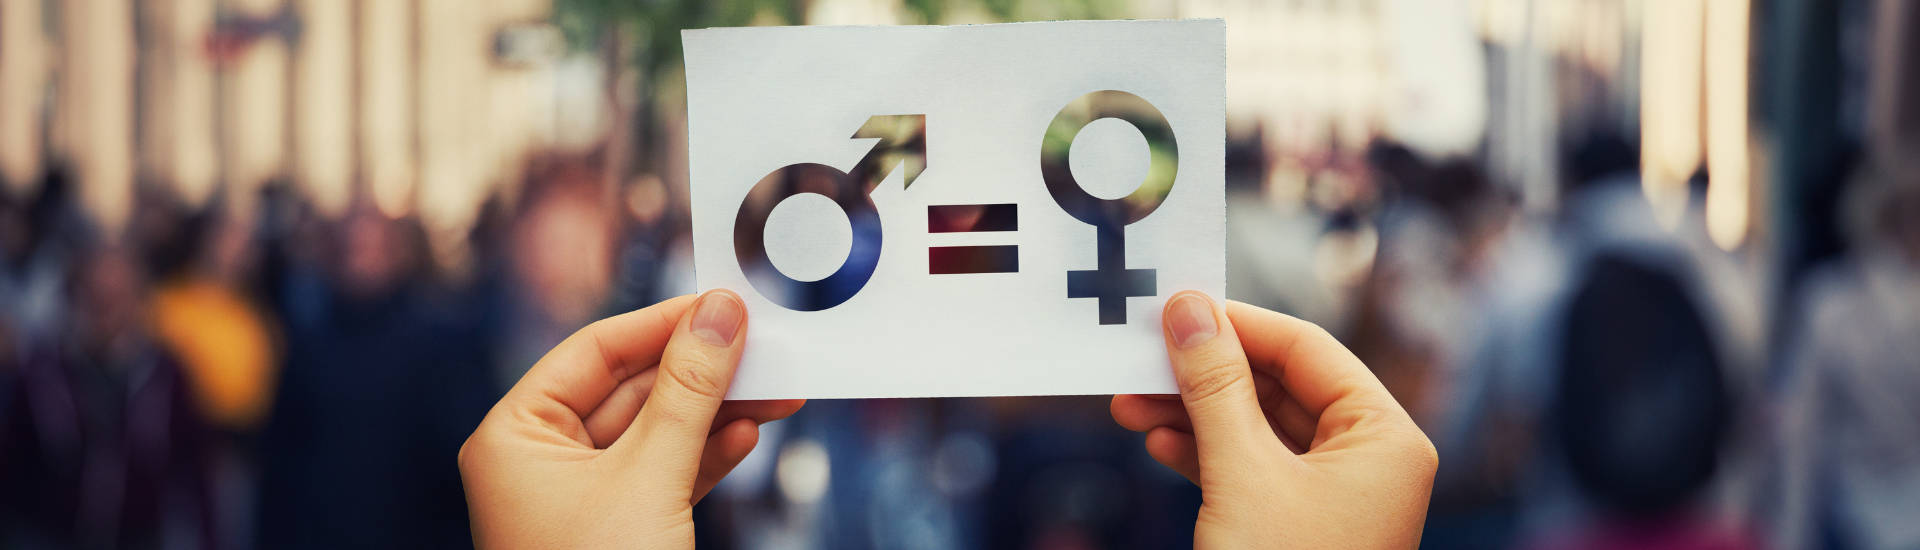 Gender Equality Management: promuovere la parità di genere nelle istituzioni pubbliche e private